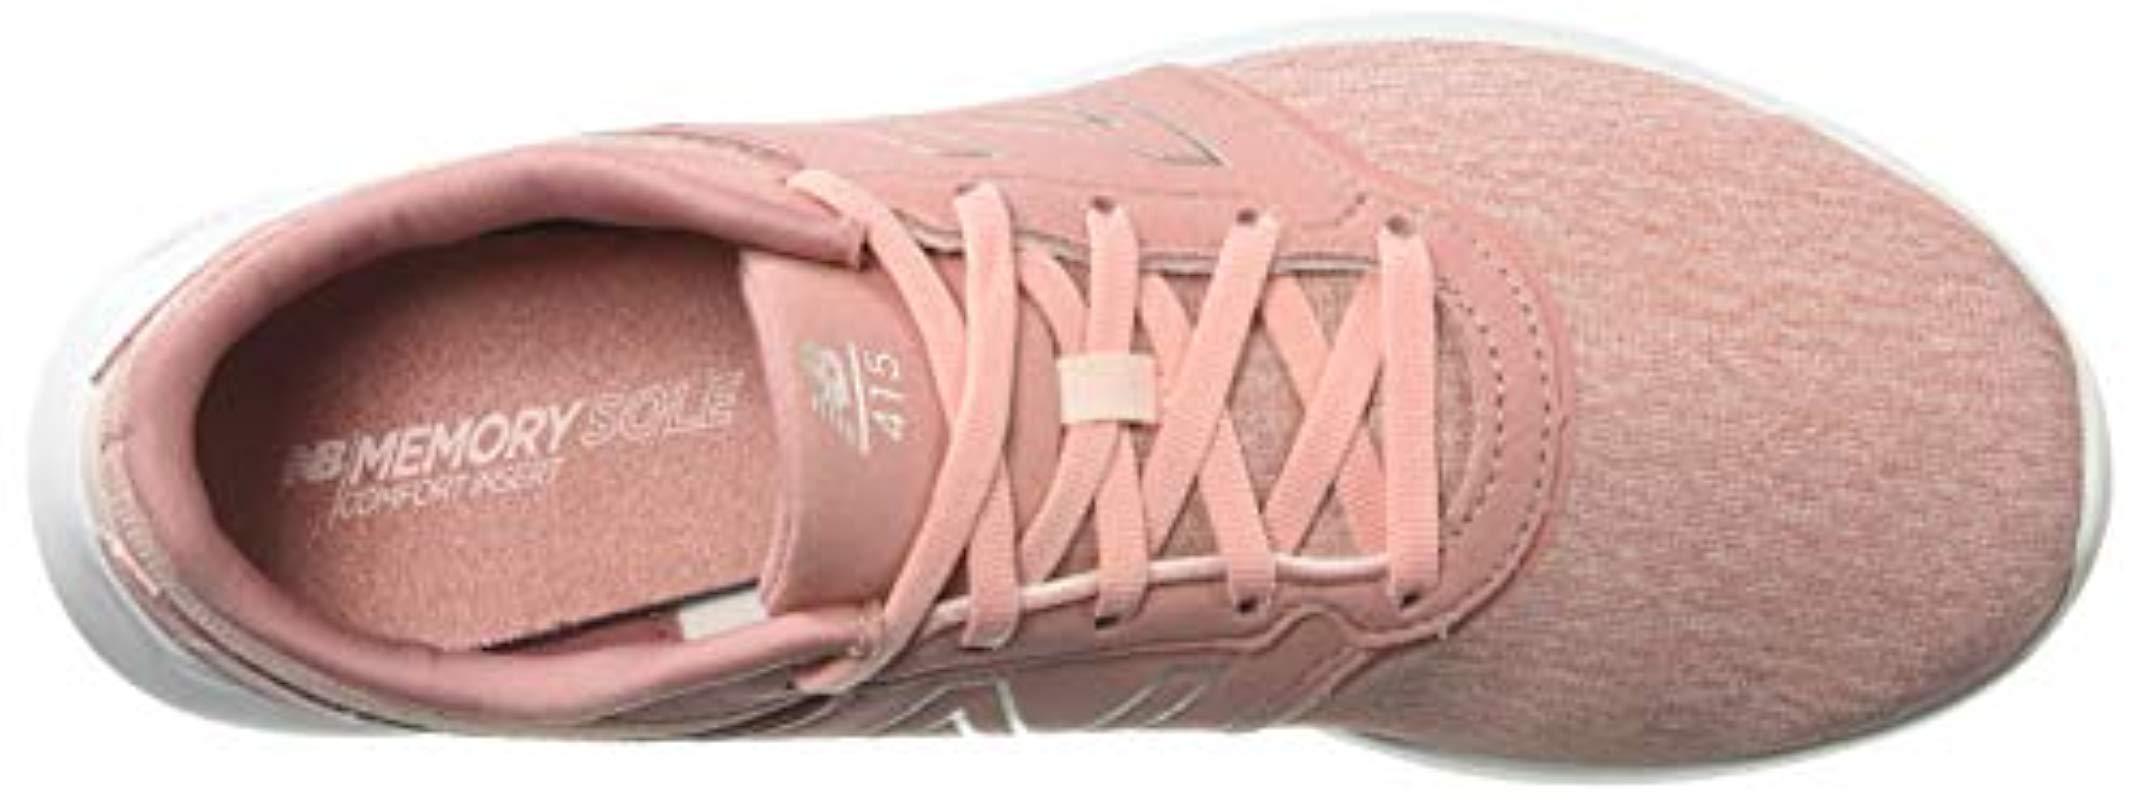 New Balance 415v1 Cush + Sneaker in Pink | Lyst طيور الماء